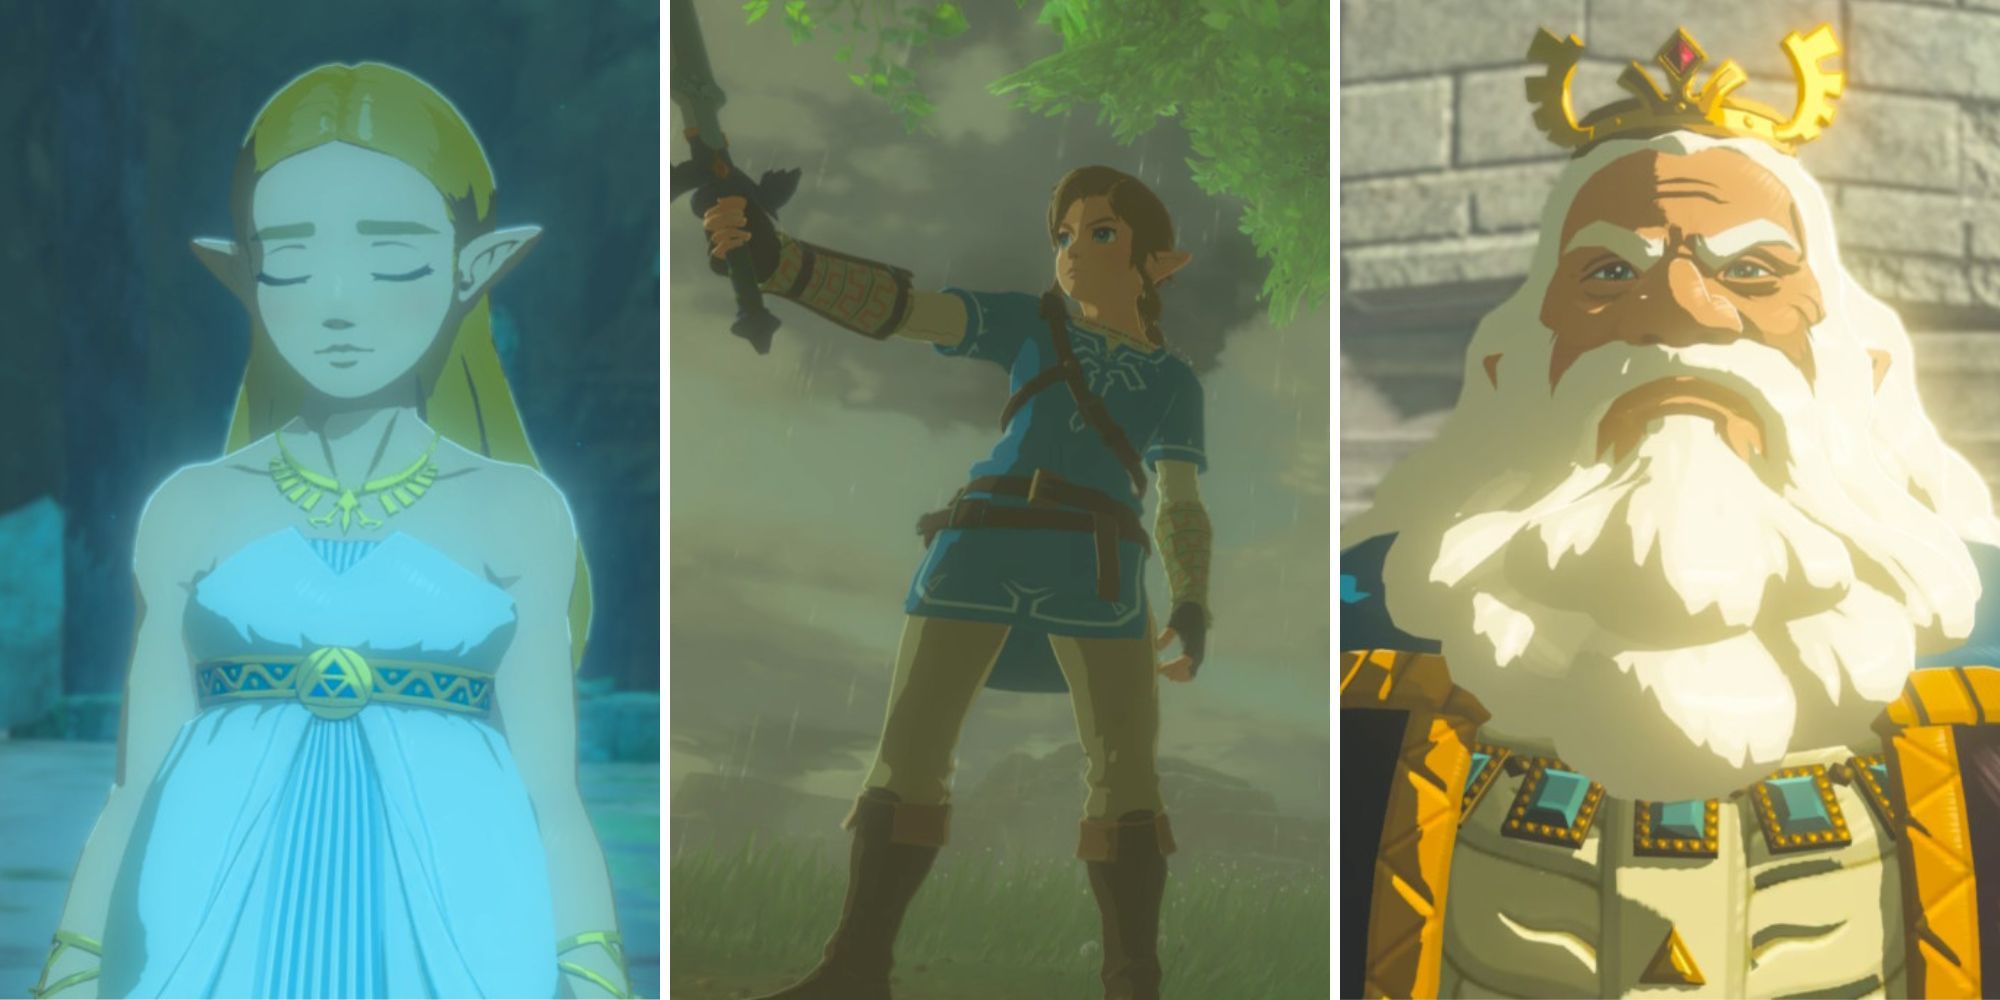 Memories - The Legend of Zelda: Breath of the Wild